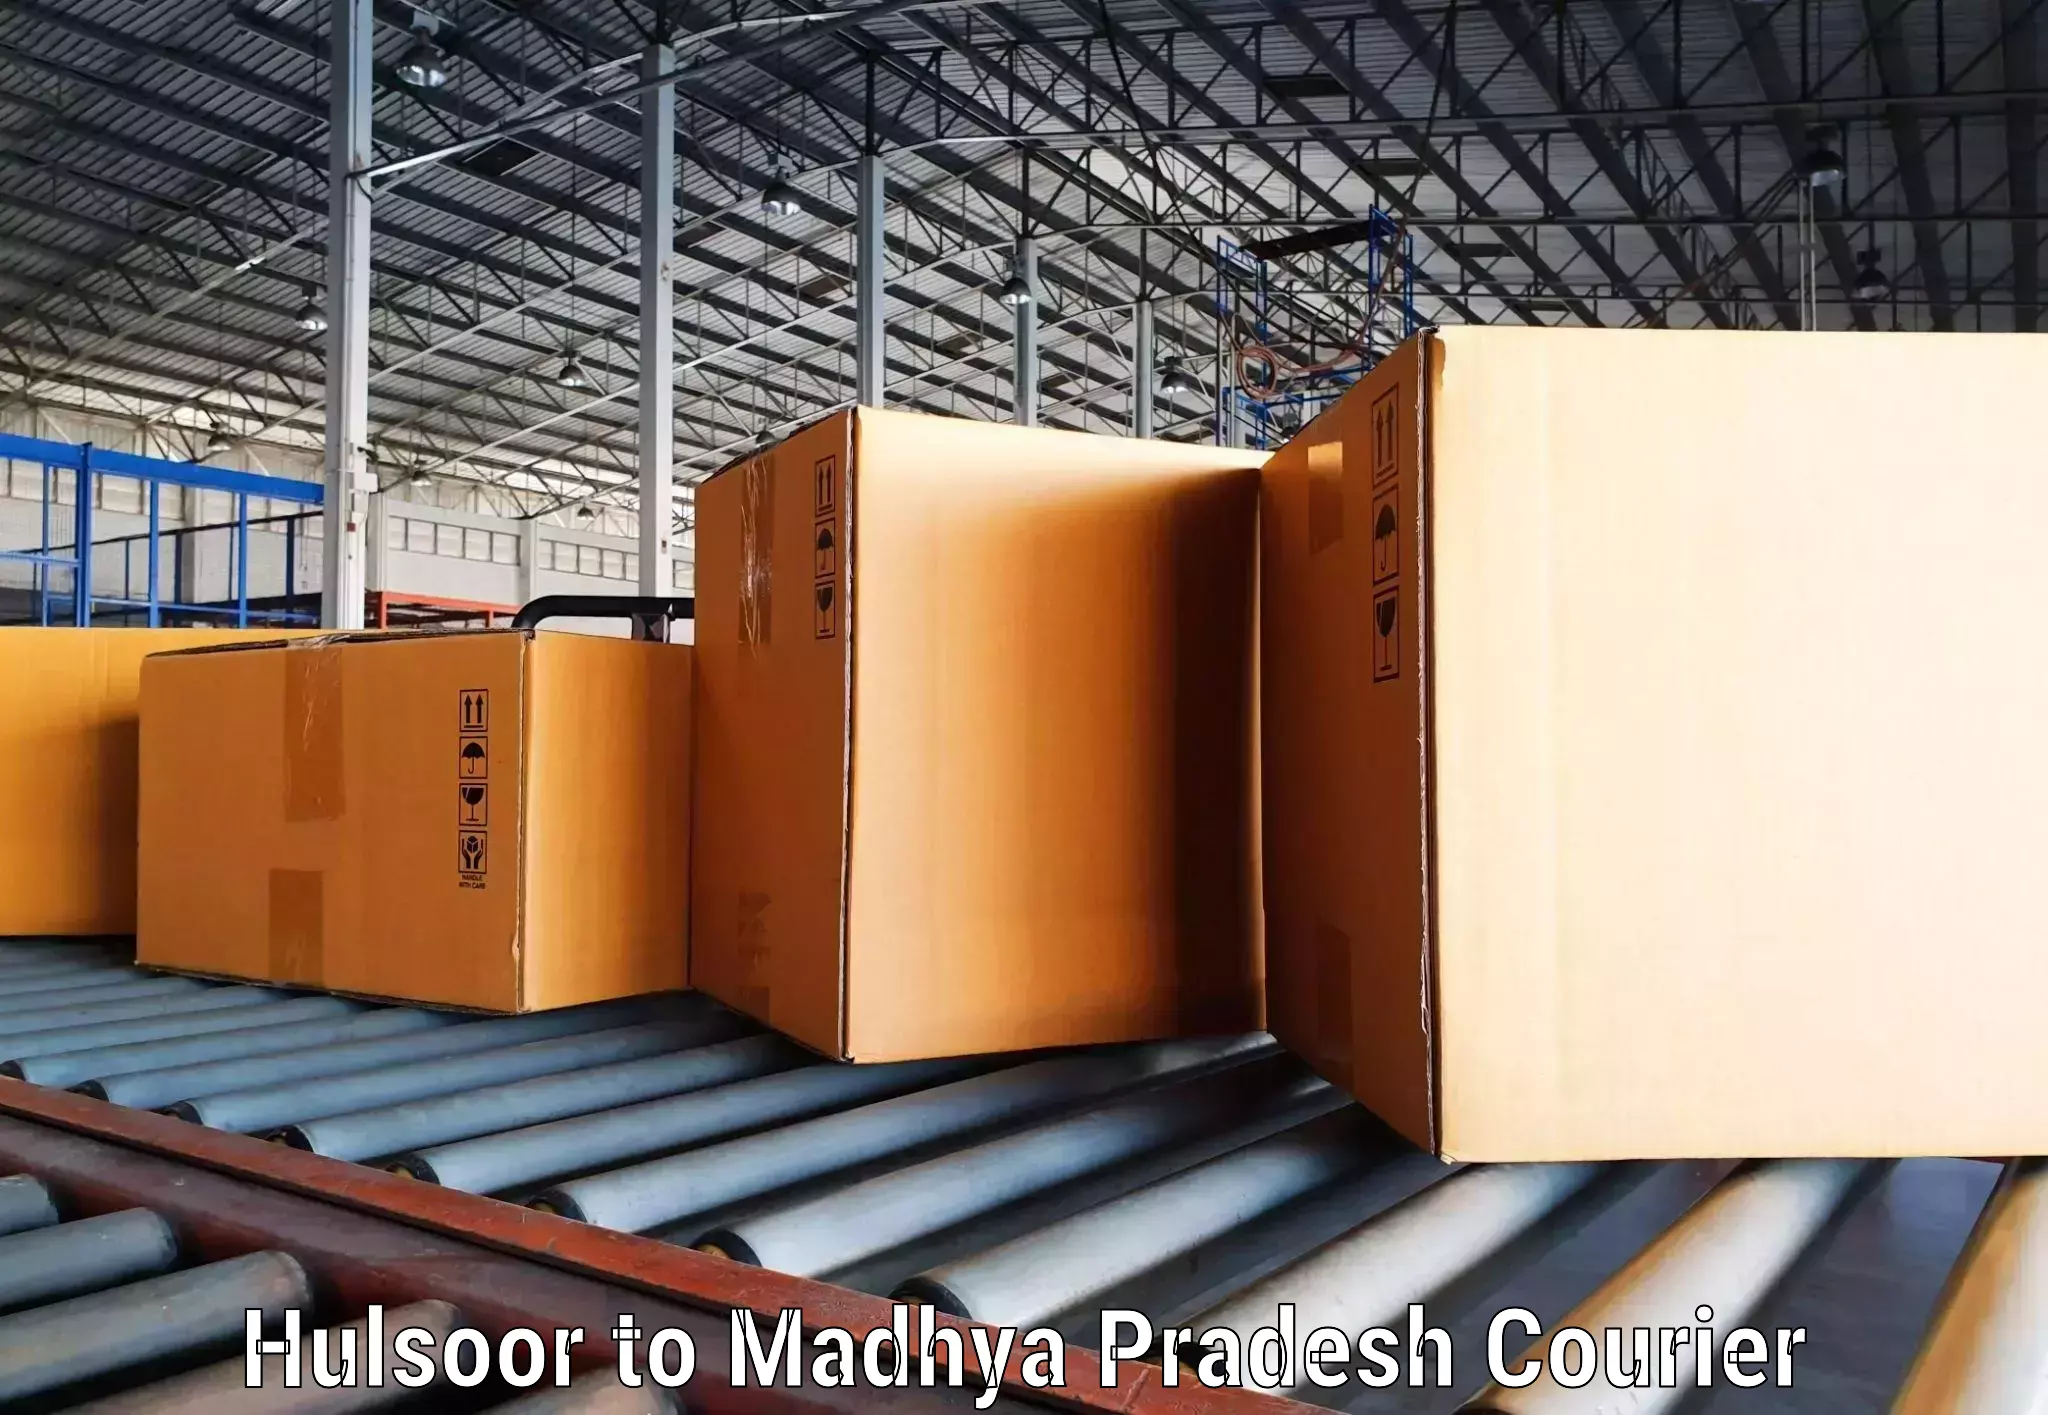 Tech-enabled shipping Hulsoor to Maheshwar